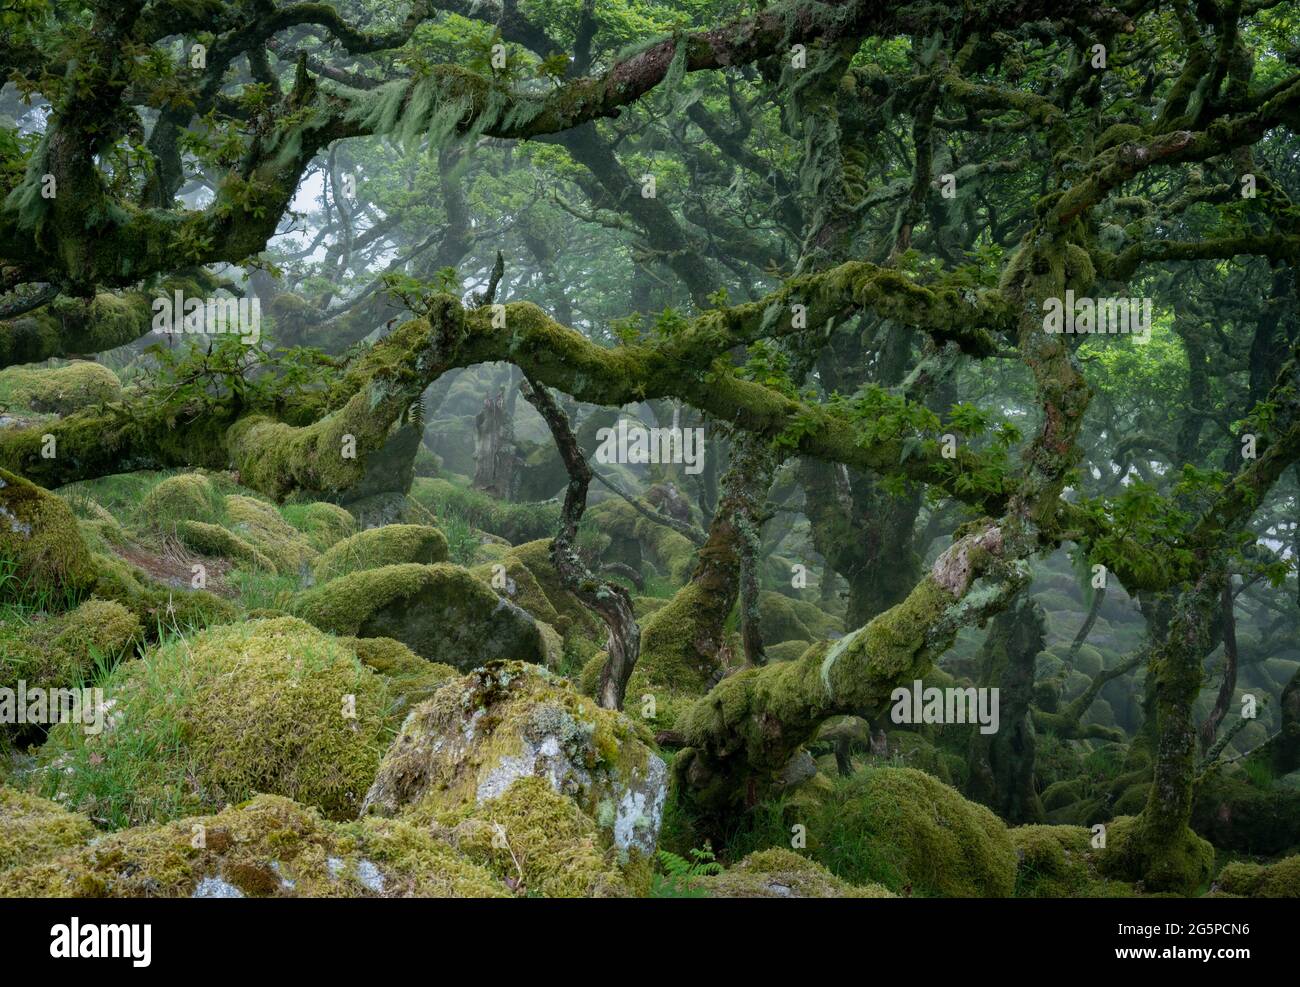 Des chênes tordus et des rochers recouverts de mousse dans la réserve naturelle de Wistman's Wood, dans le parc national de Dartmoor. (Été 2021) Banque D'Images